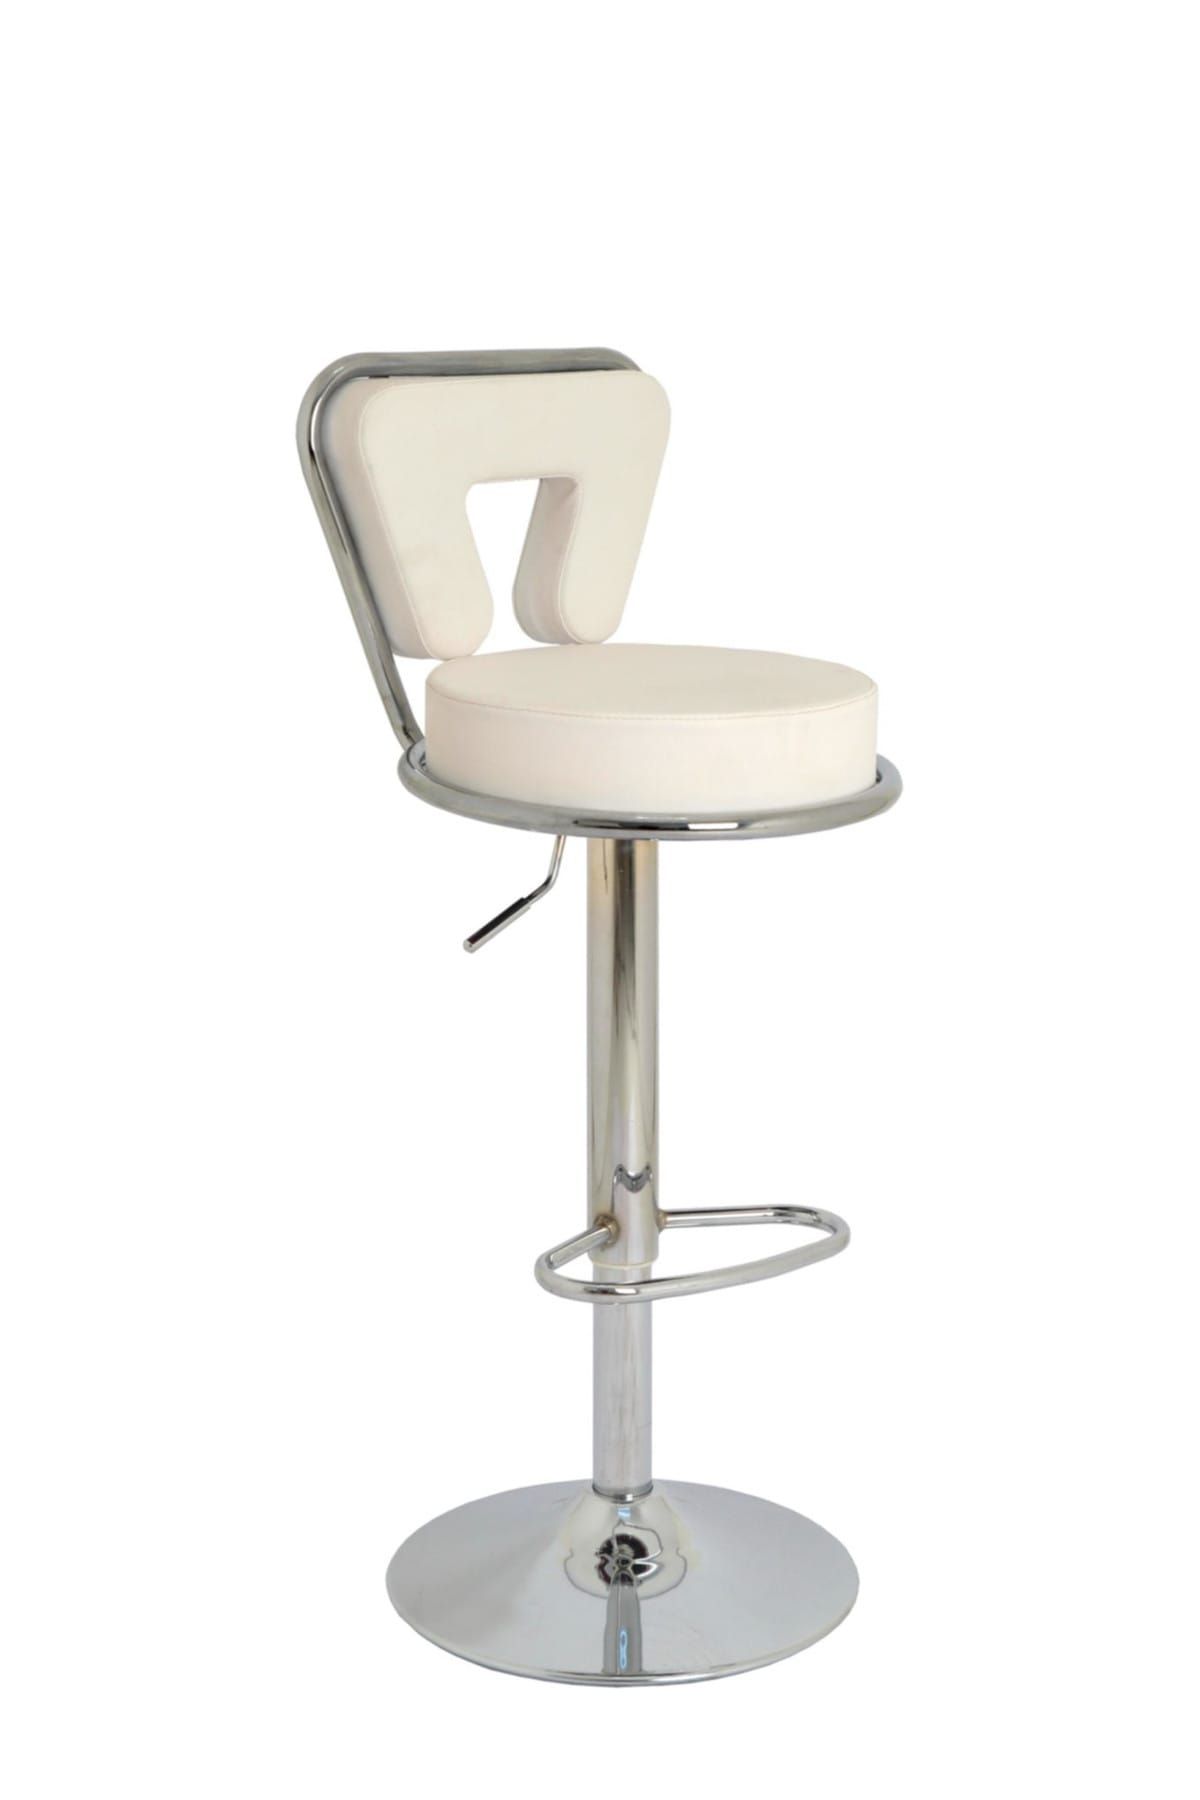 Bürocci Virago Bar Sandalyesi - Beyaz Deri - 9540s0109